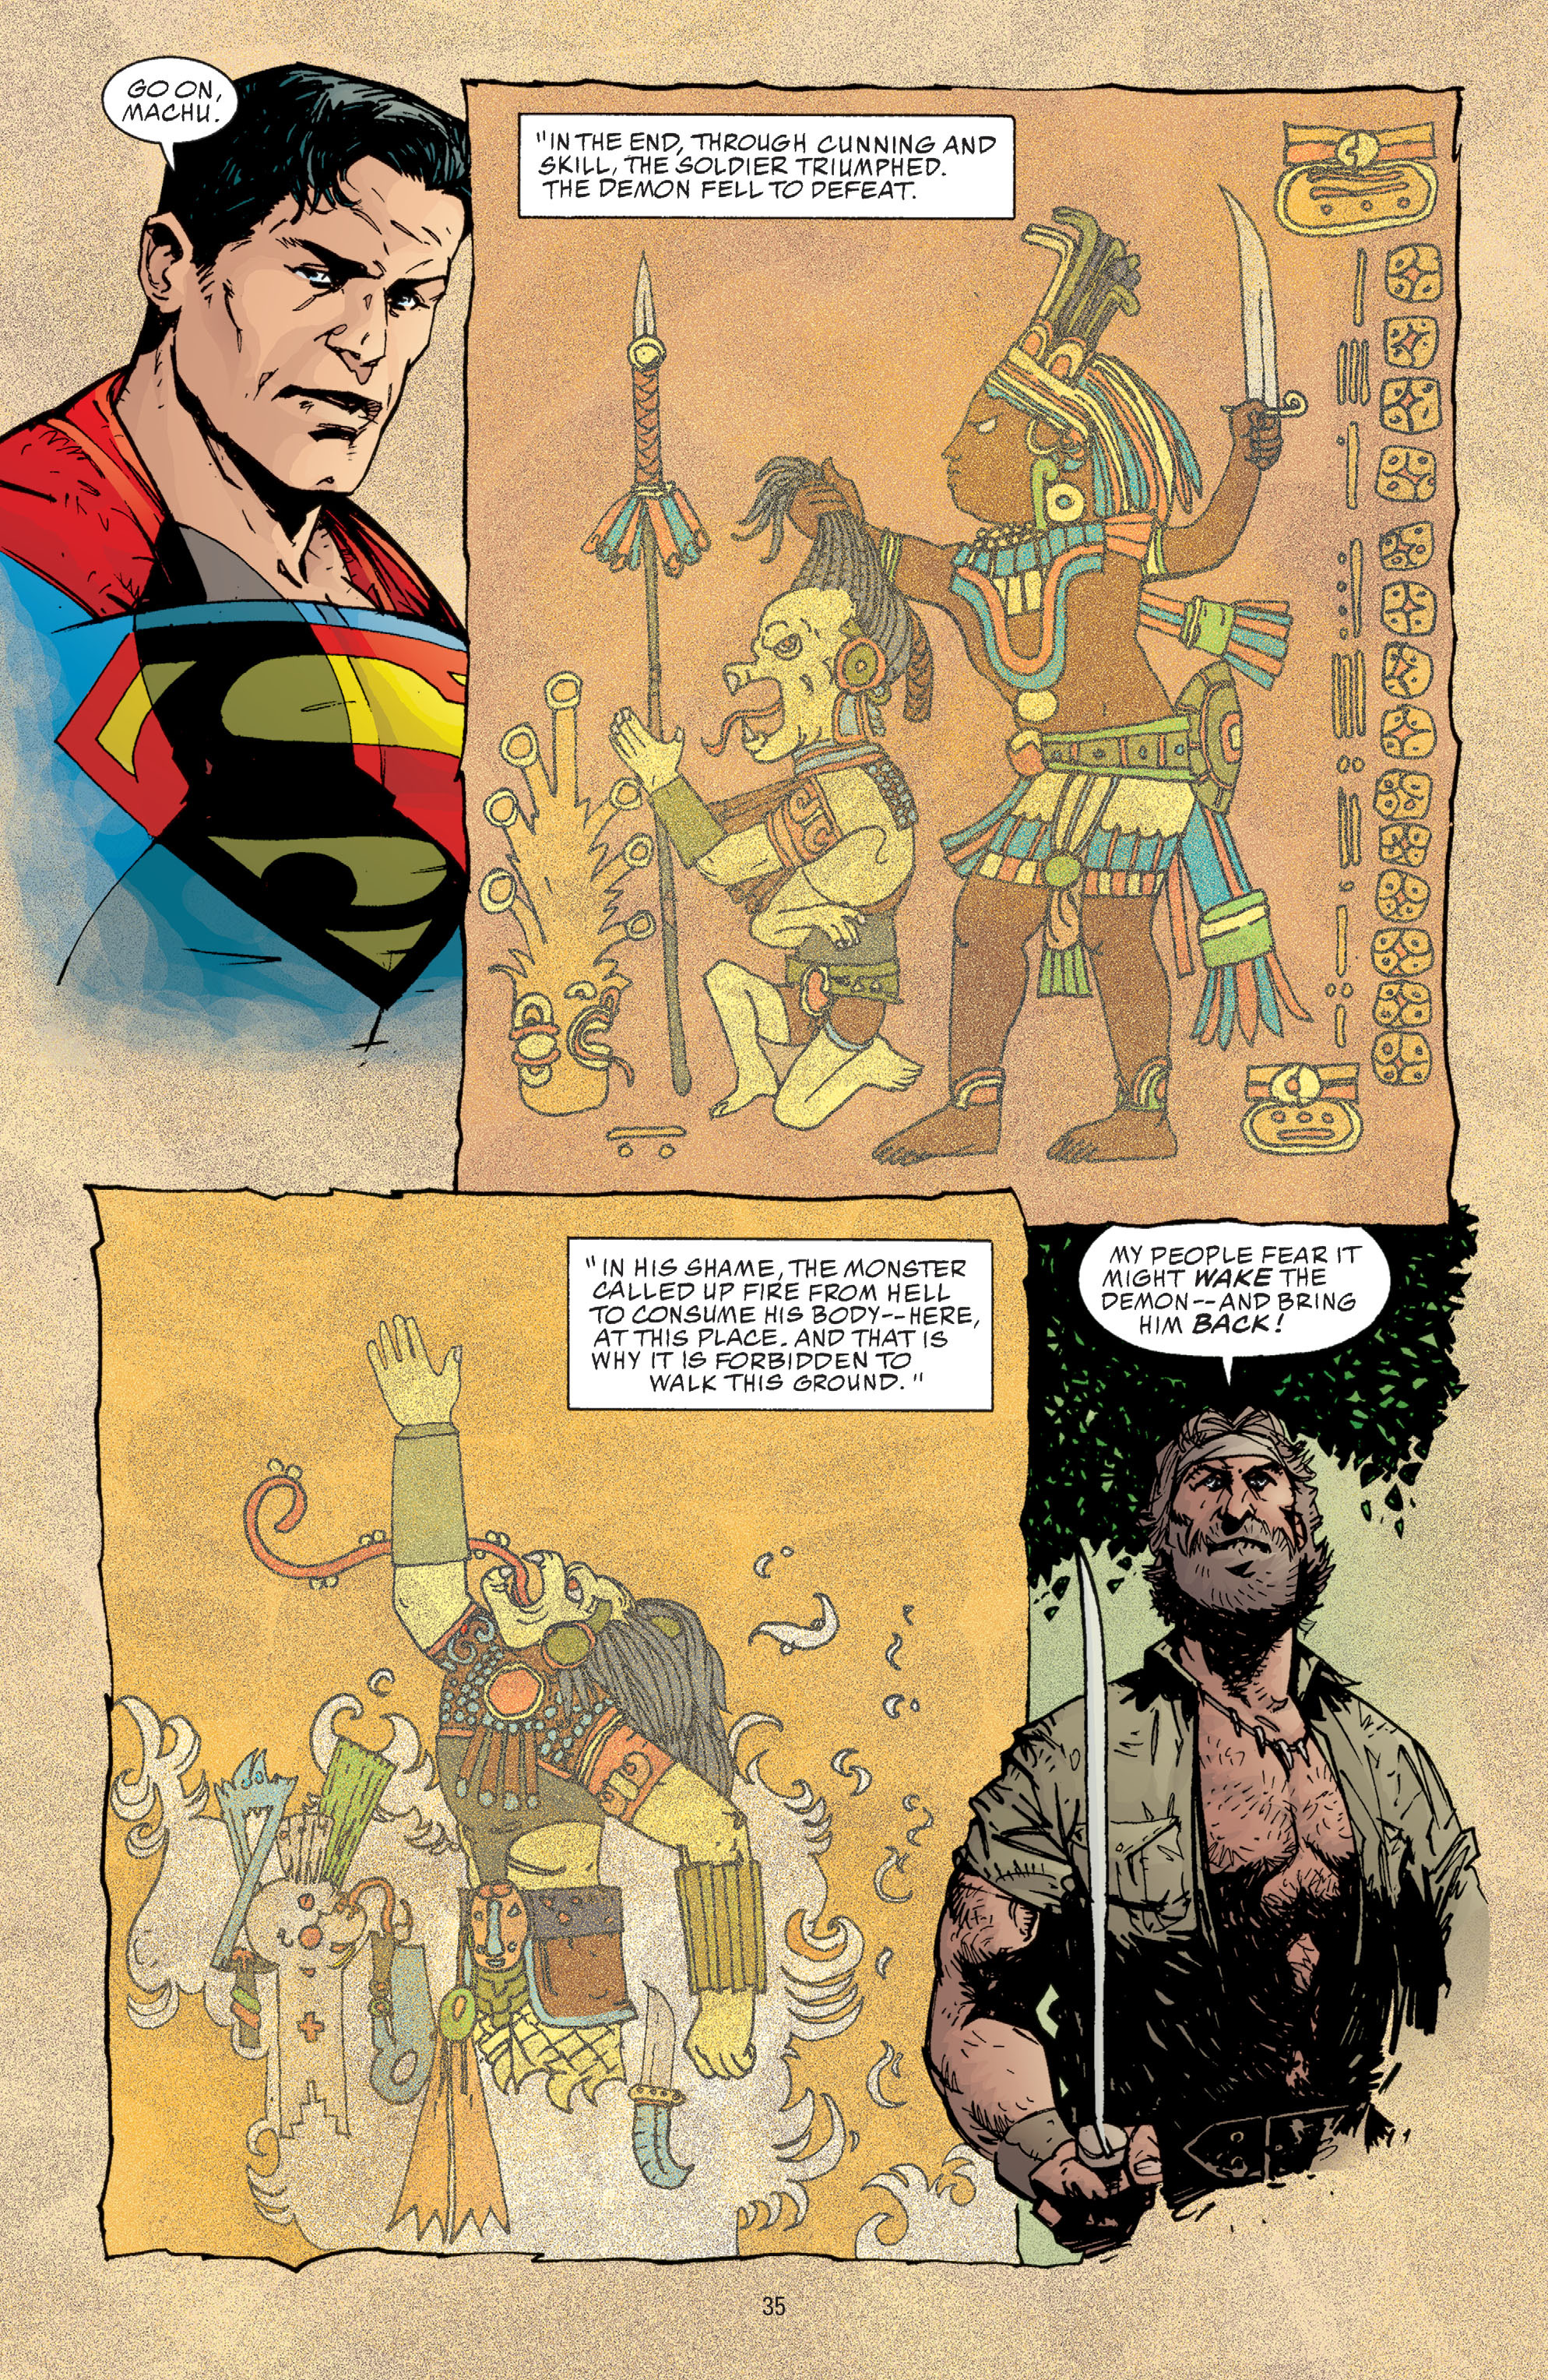 DC Comics/Dark Horse Comics: Justice League Full #1 - English 33